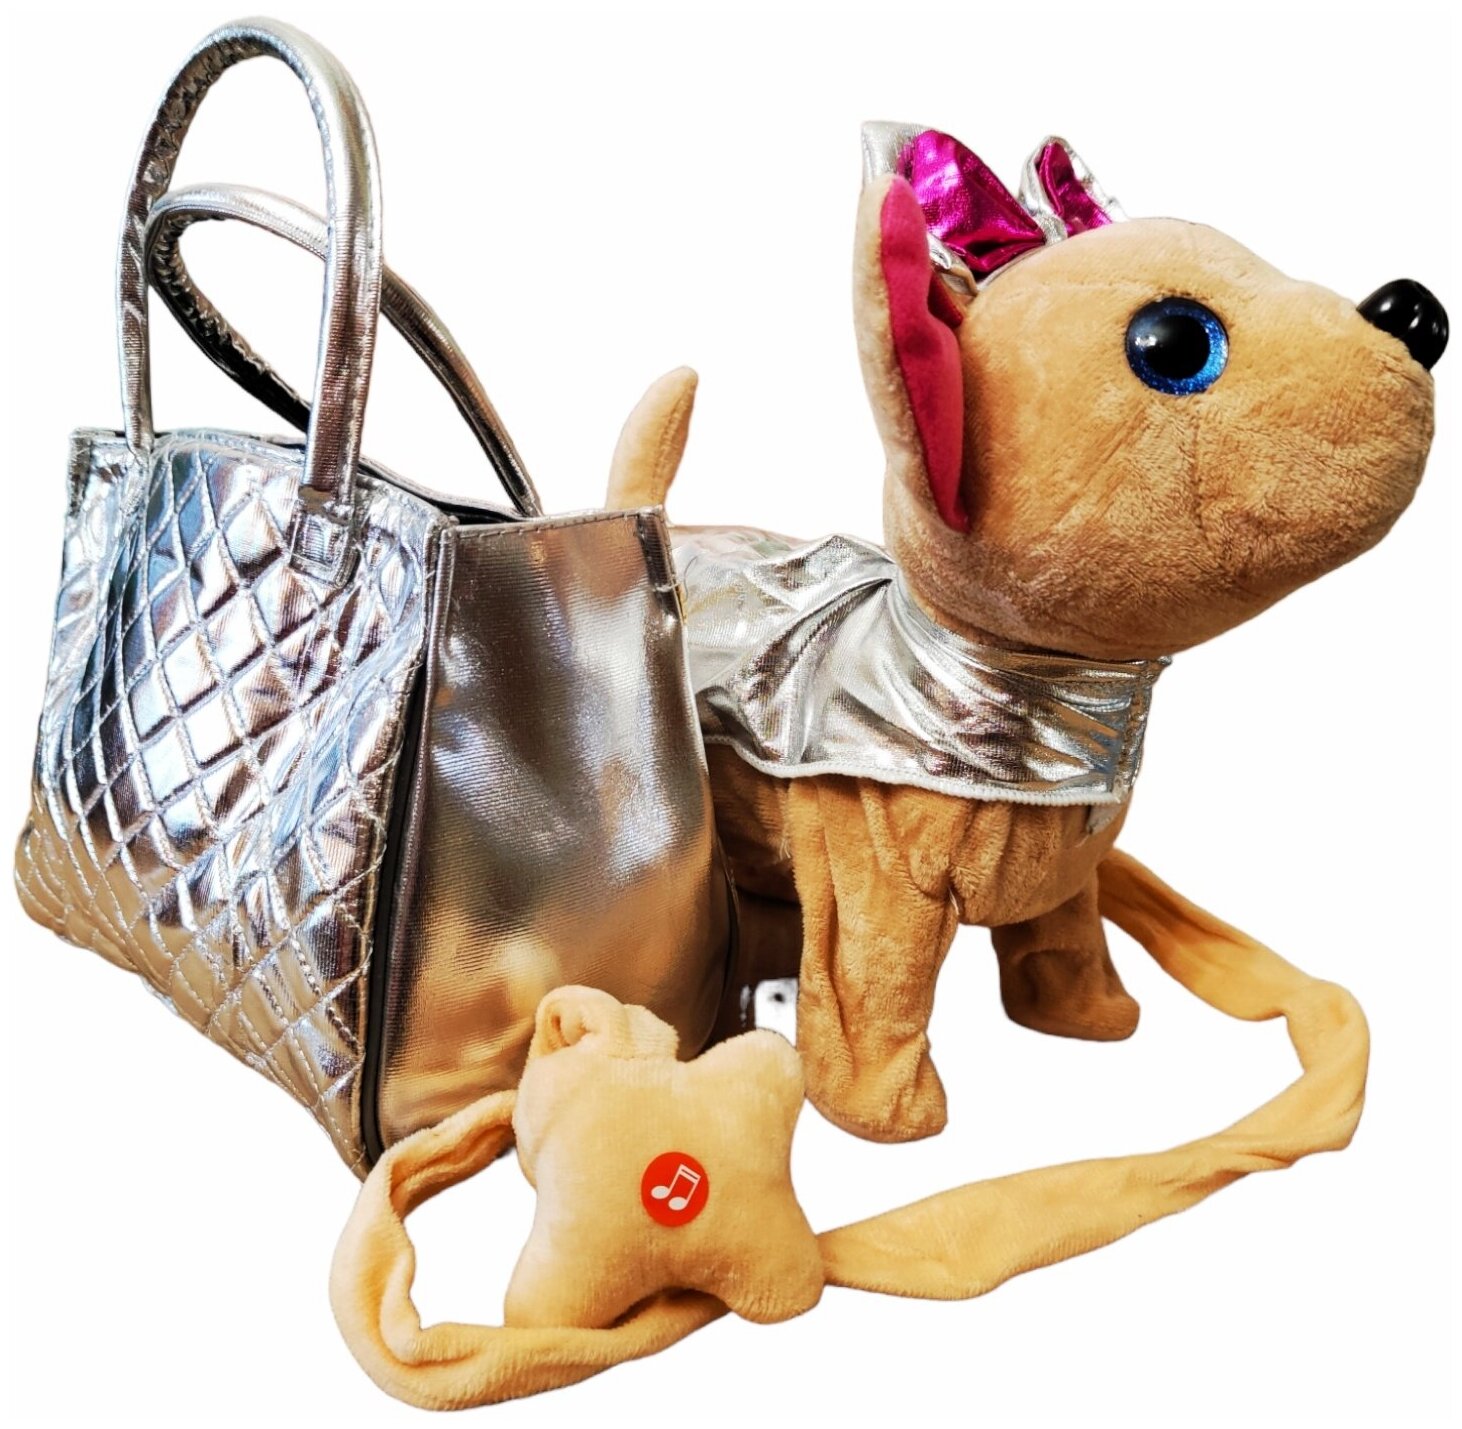 Плюшевая Собачка Chi Chi Чи Чи с сумочкой серебряной/ Интерактивная игрушка "Питомец" / Мягкая игрушка Собака в сумке